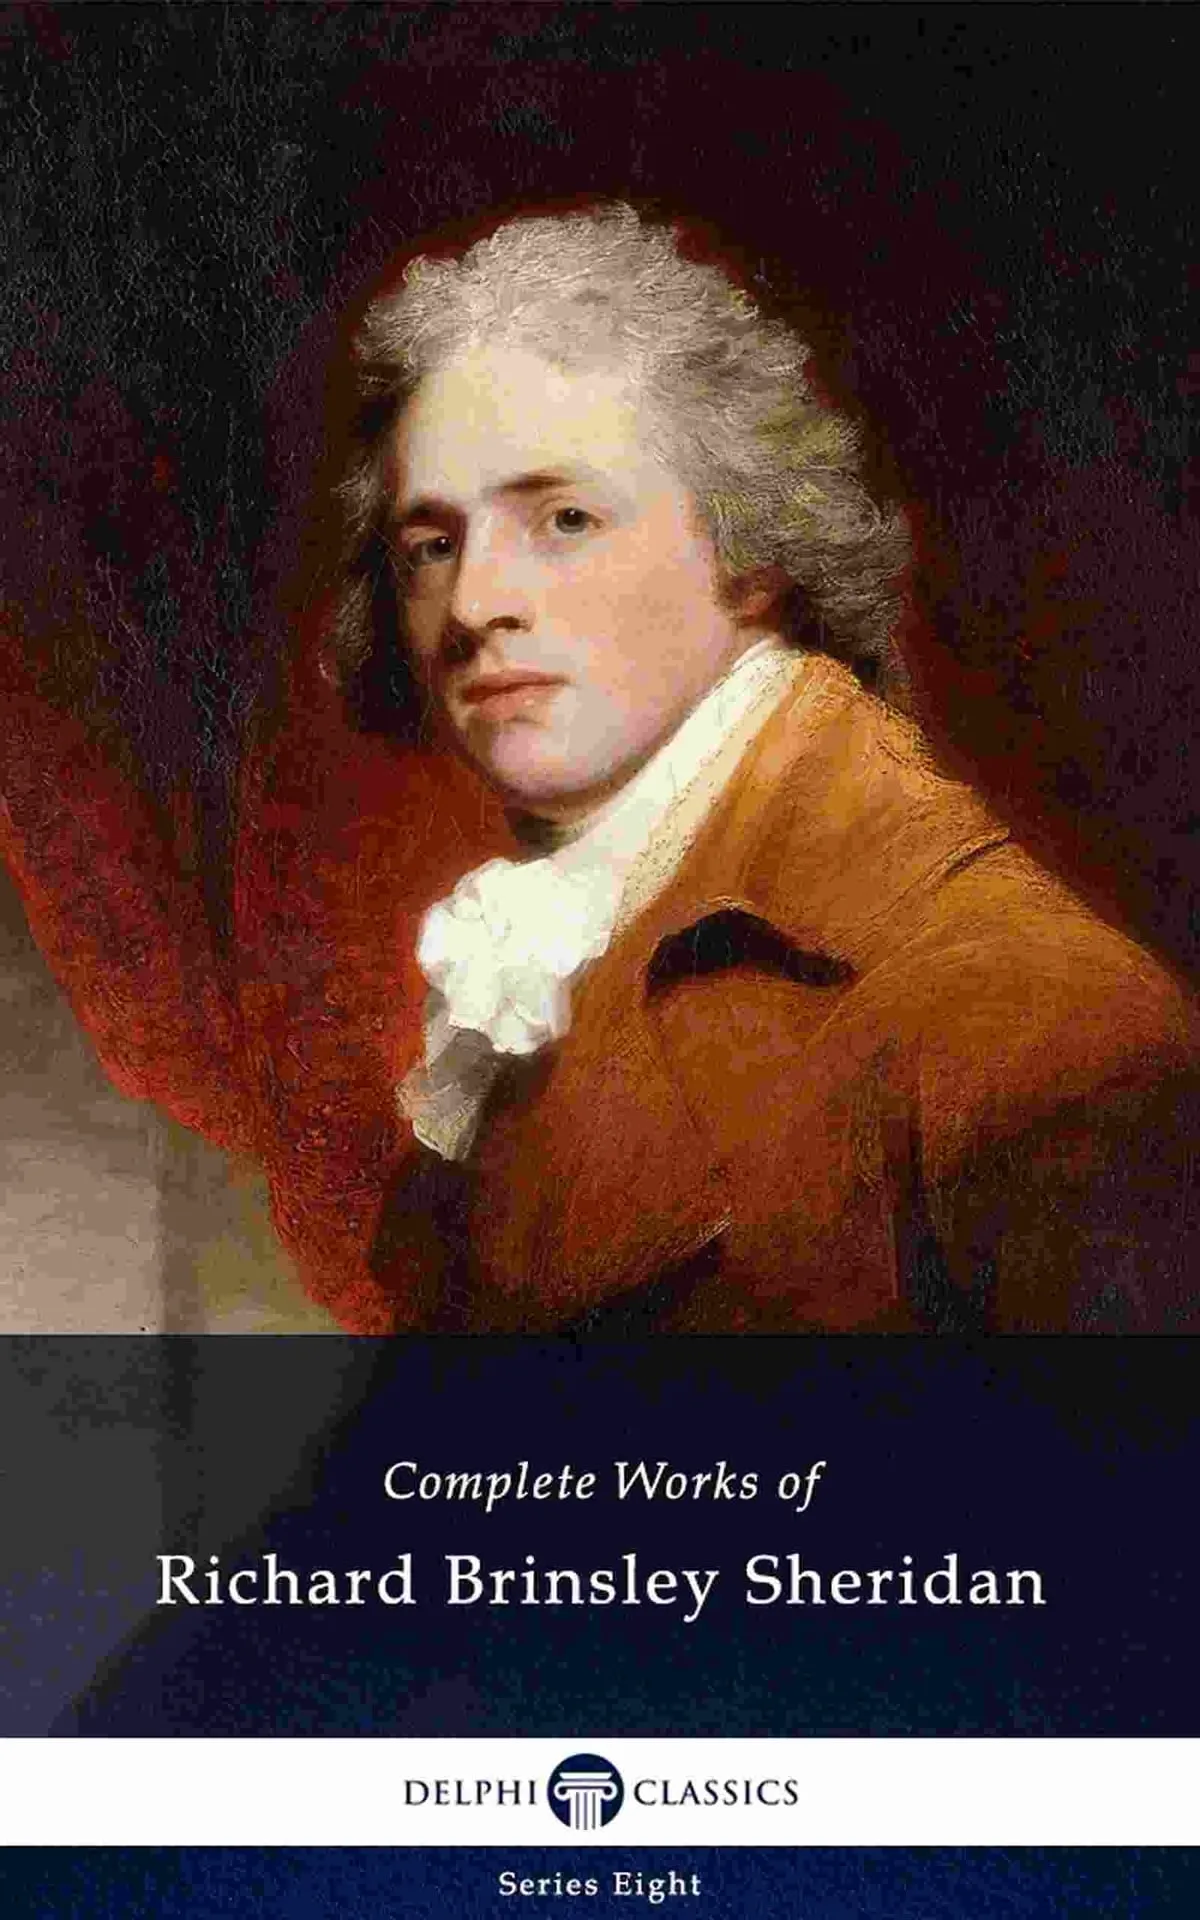 Ричард Бринсли Шеридан (1751–1816)